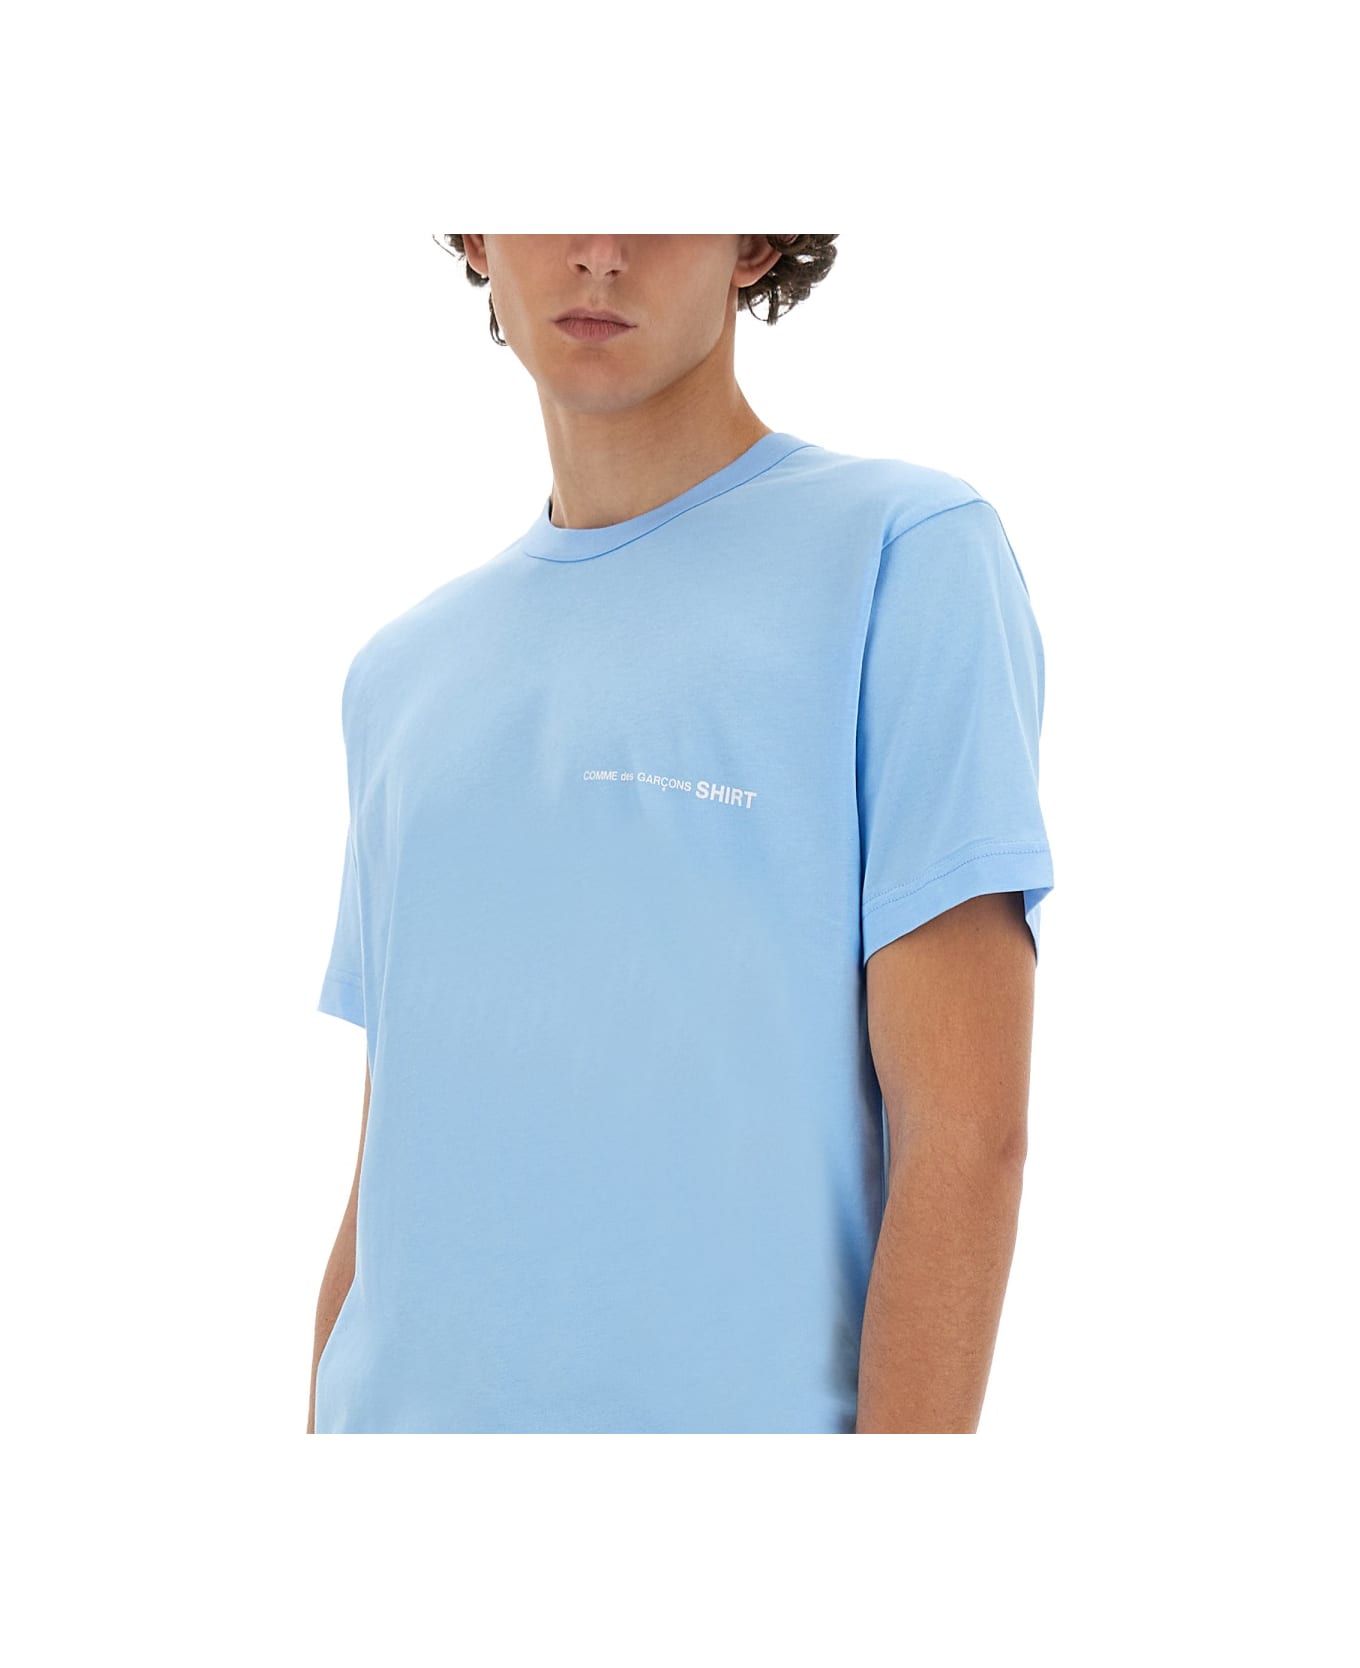 Comme des Garçons Shirt Jersey T-shirt - BLUE